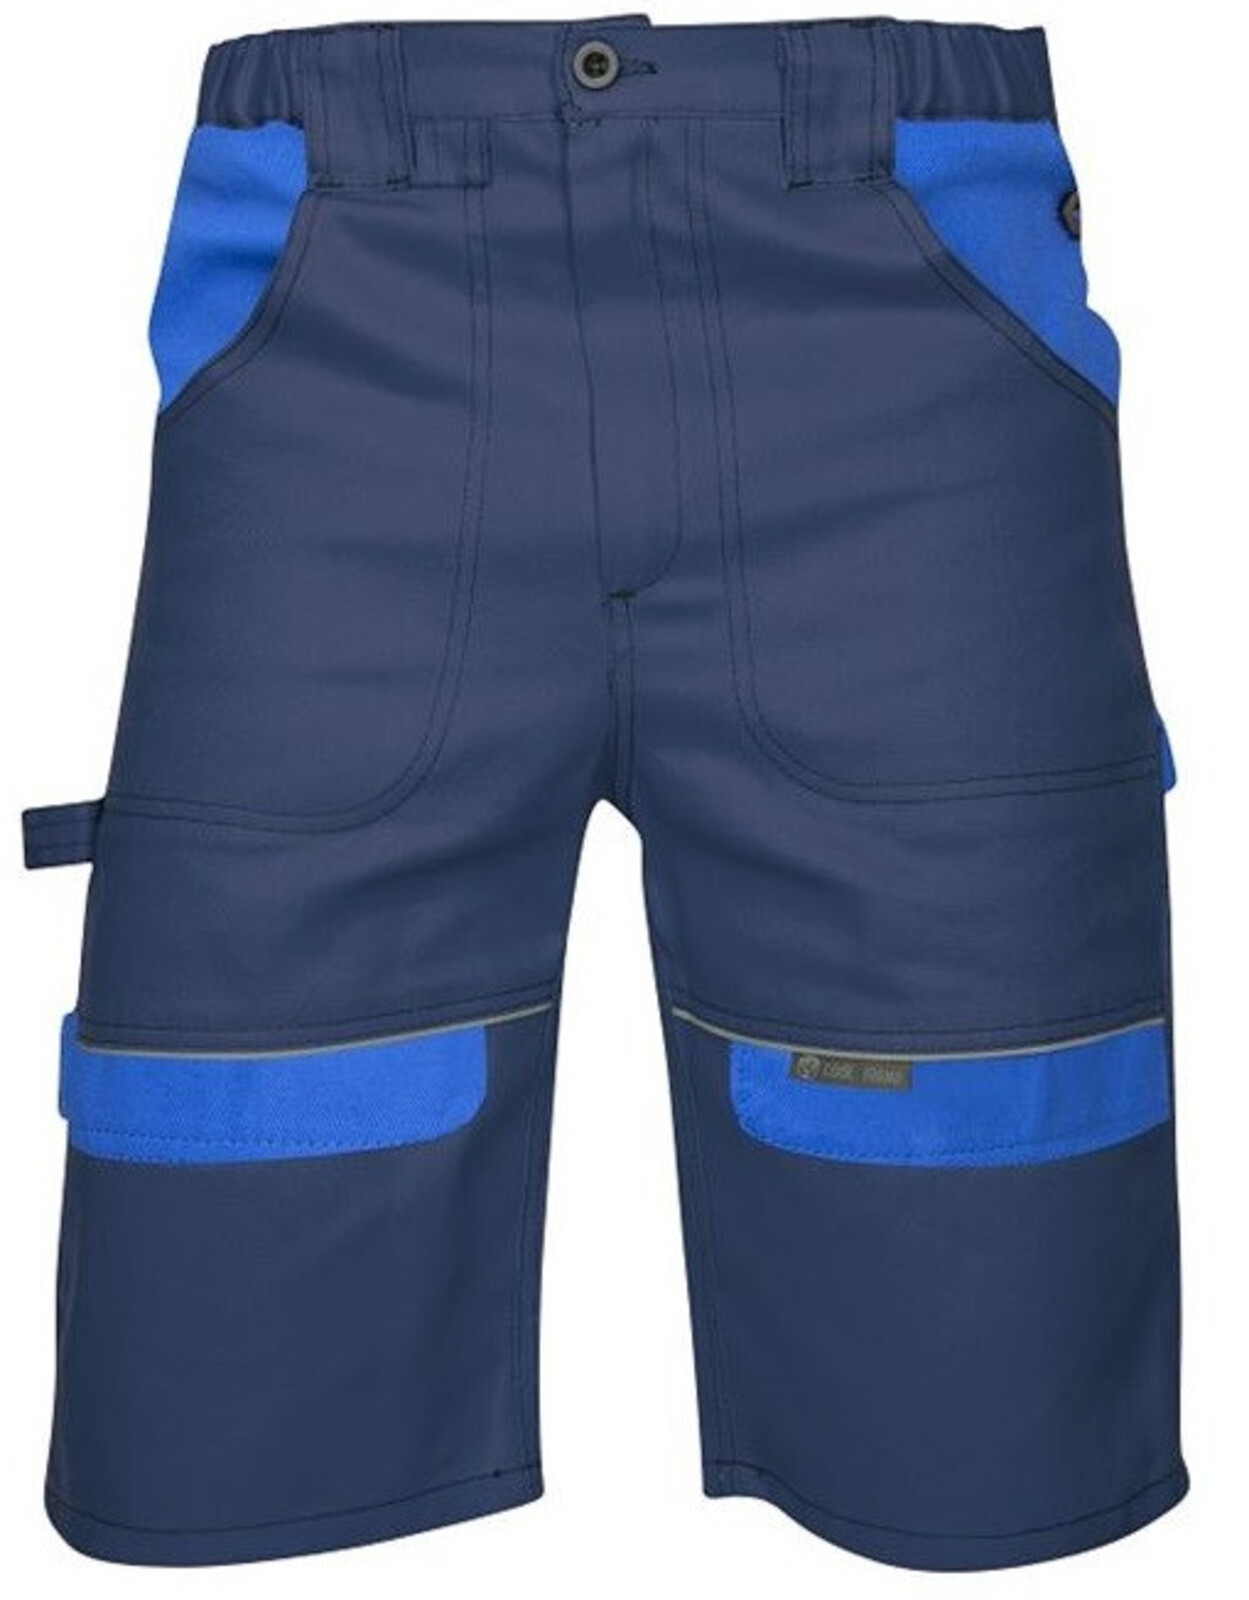 Pánske montérkové šortky Ardon Cool Trend - veľkosť: 50, farba: tmavomodrá/svetlomodrá